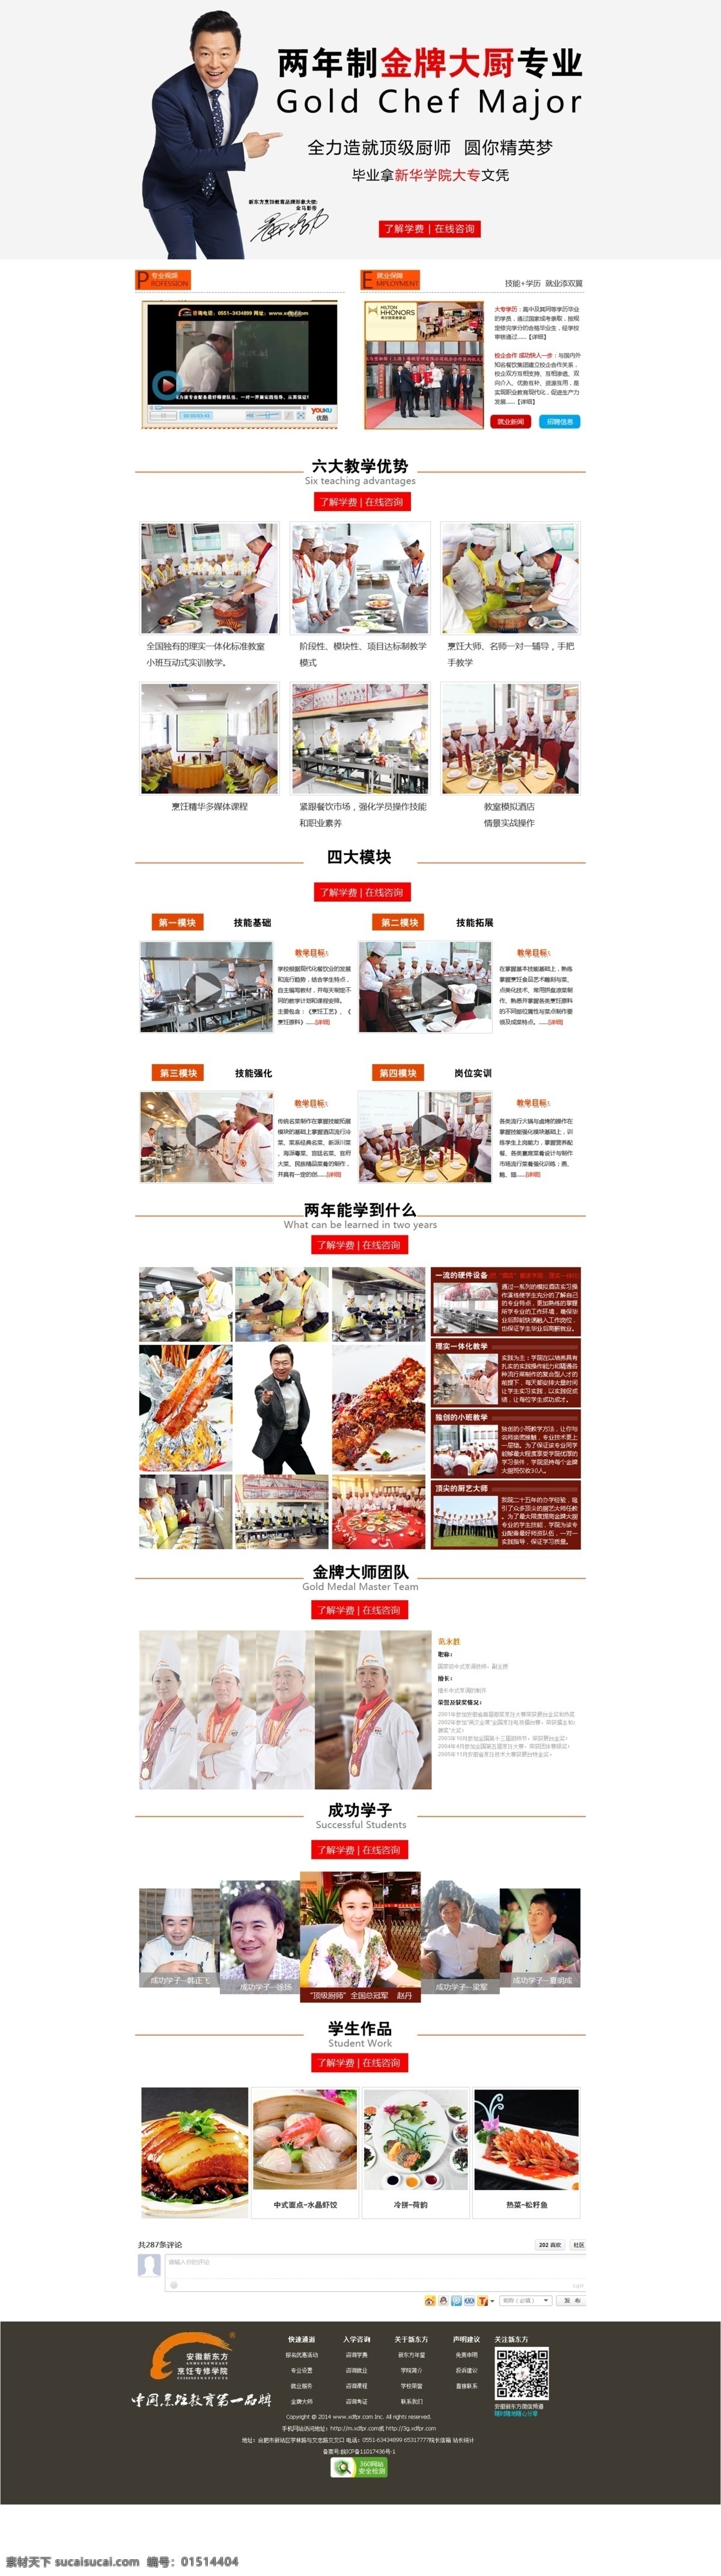 金牌 大厨 专业 专题 厨师 热菜美食 网页模板 中文模板 源文件 白色